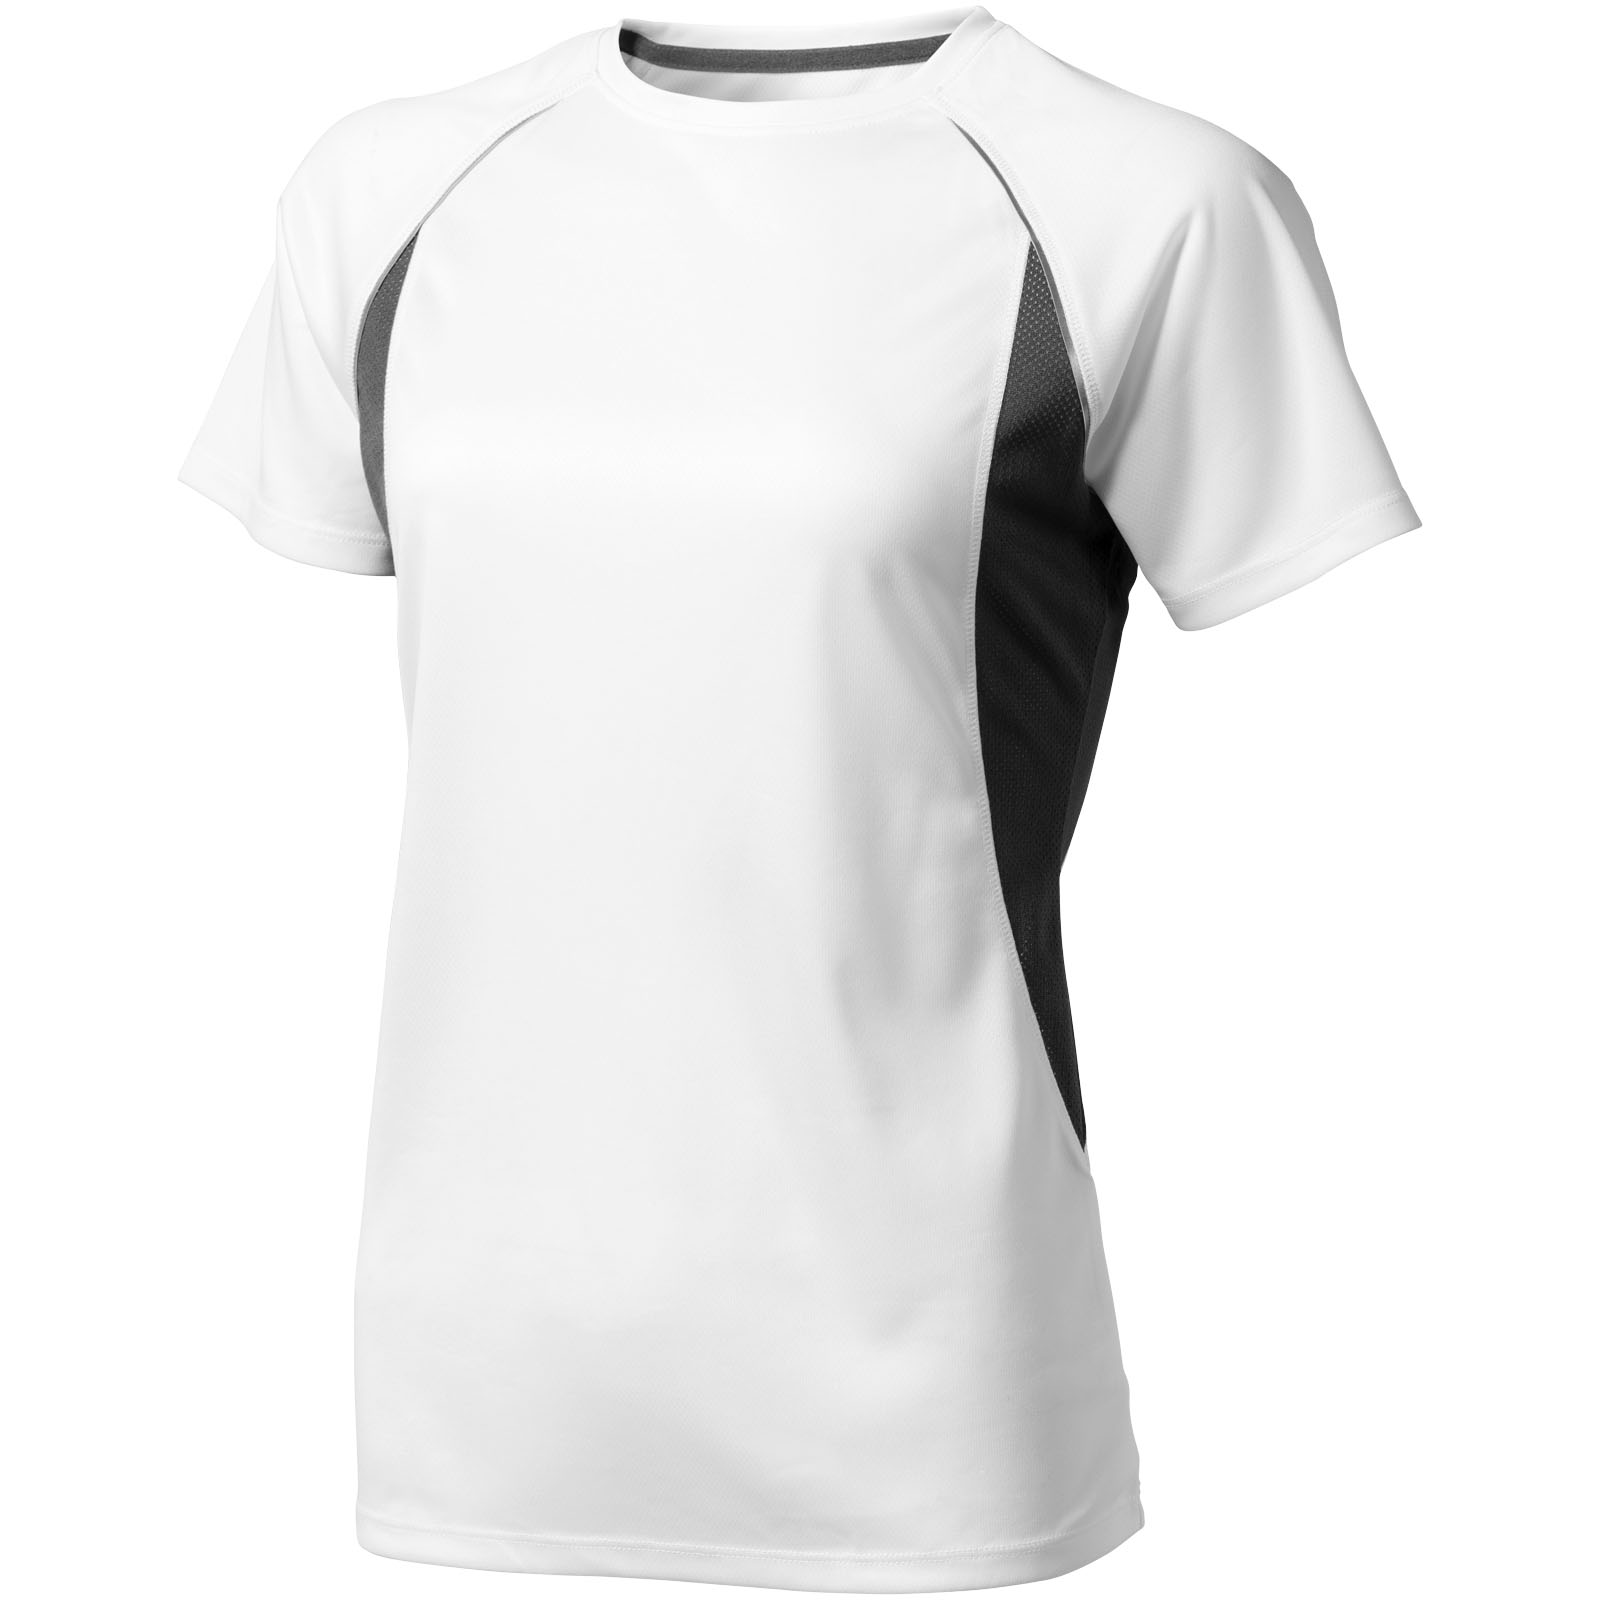 T-shirt bicolore personnalisé (femme) - Leslie - Zaprinta France